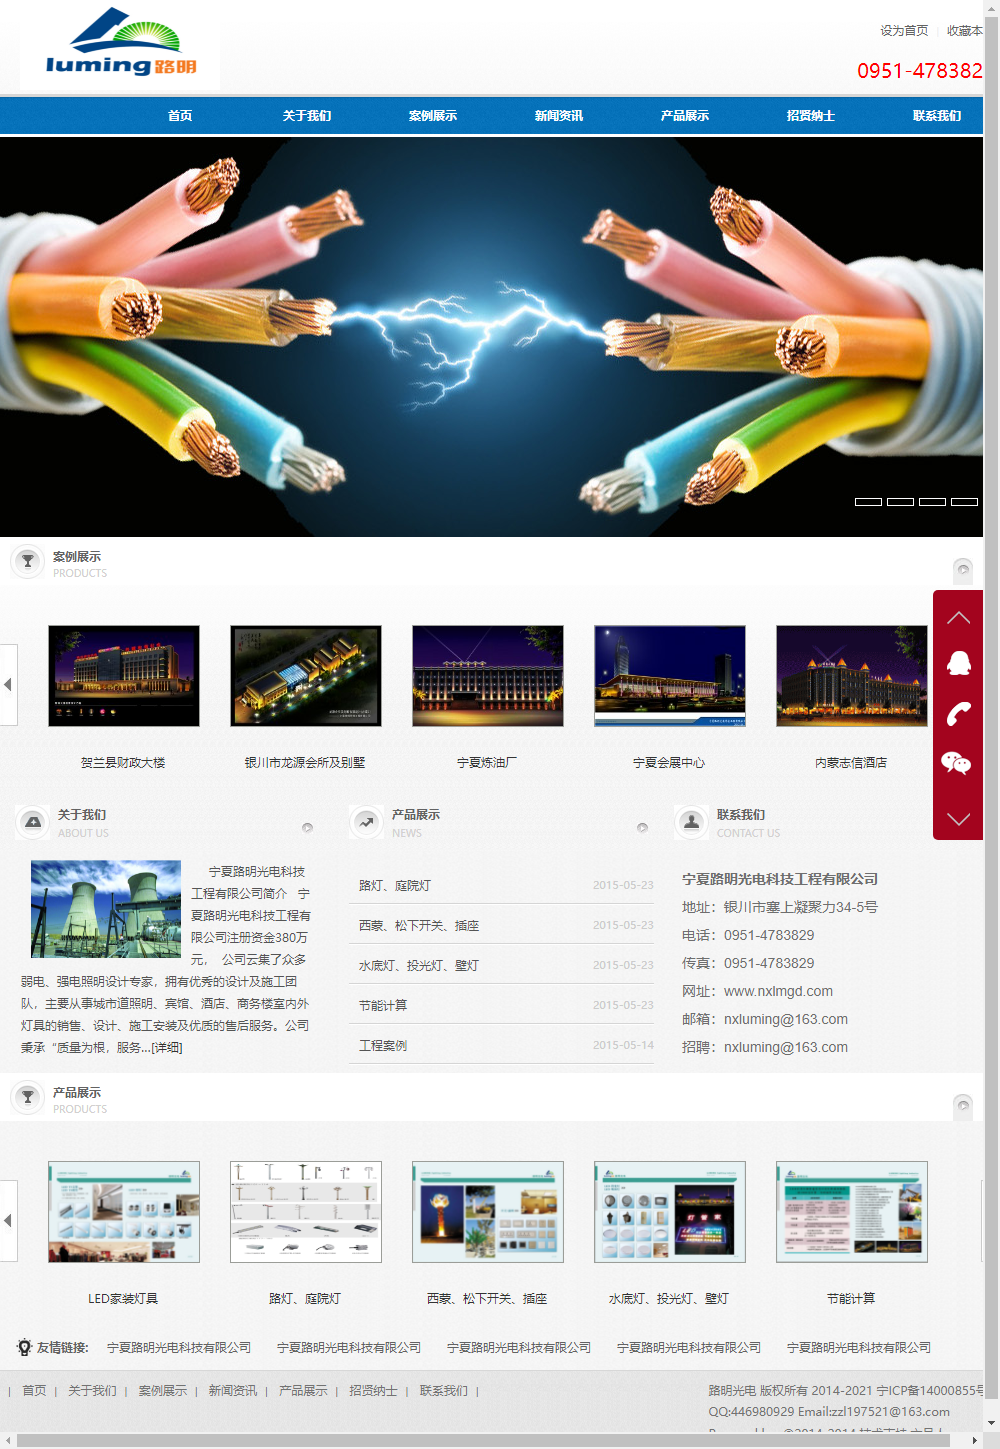 宁夏路明光电科技工程有限公司网站案例